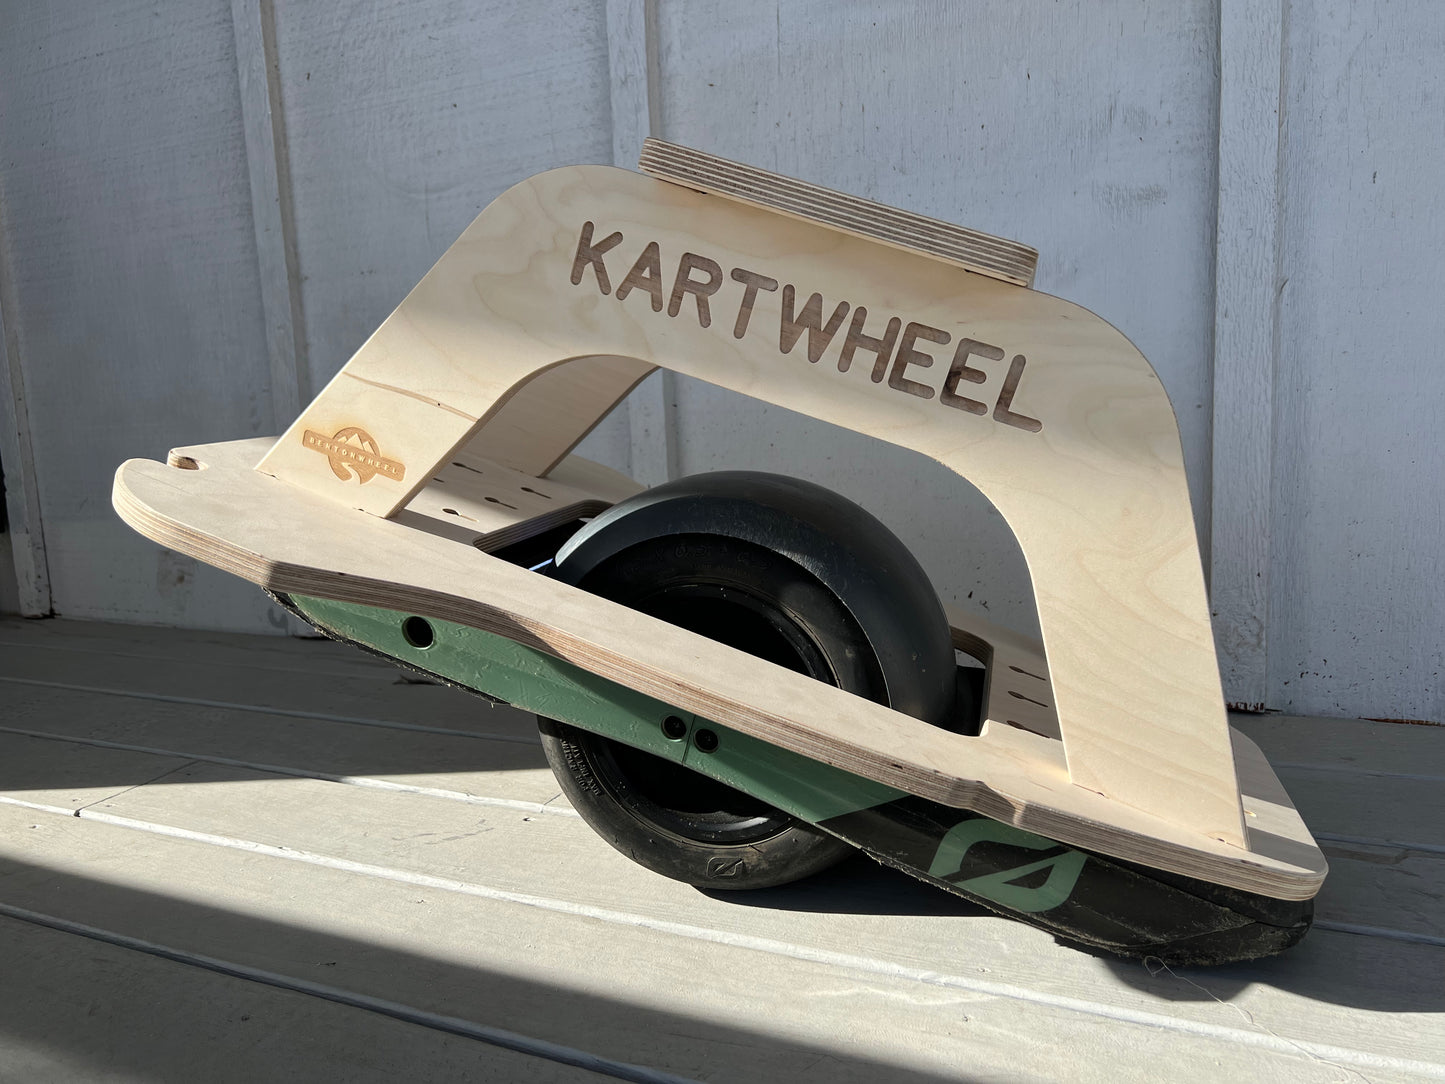 KARTWHEEL Converson Kit